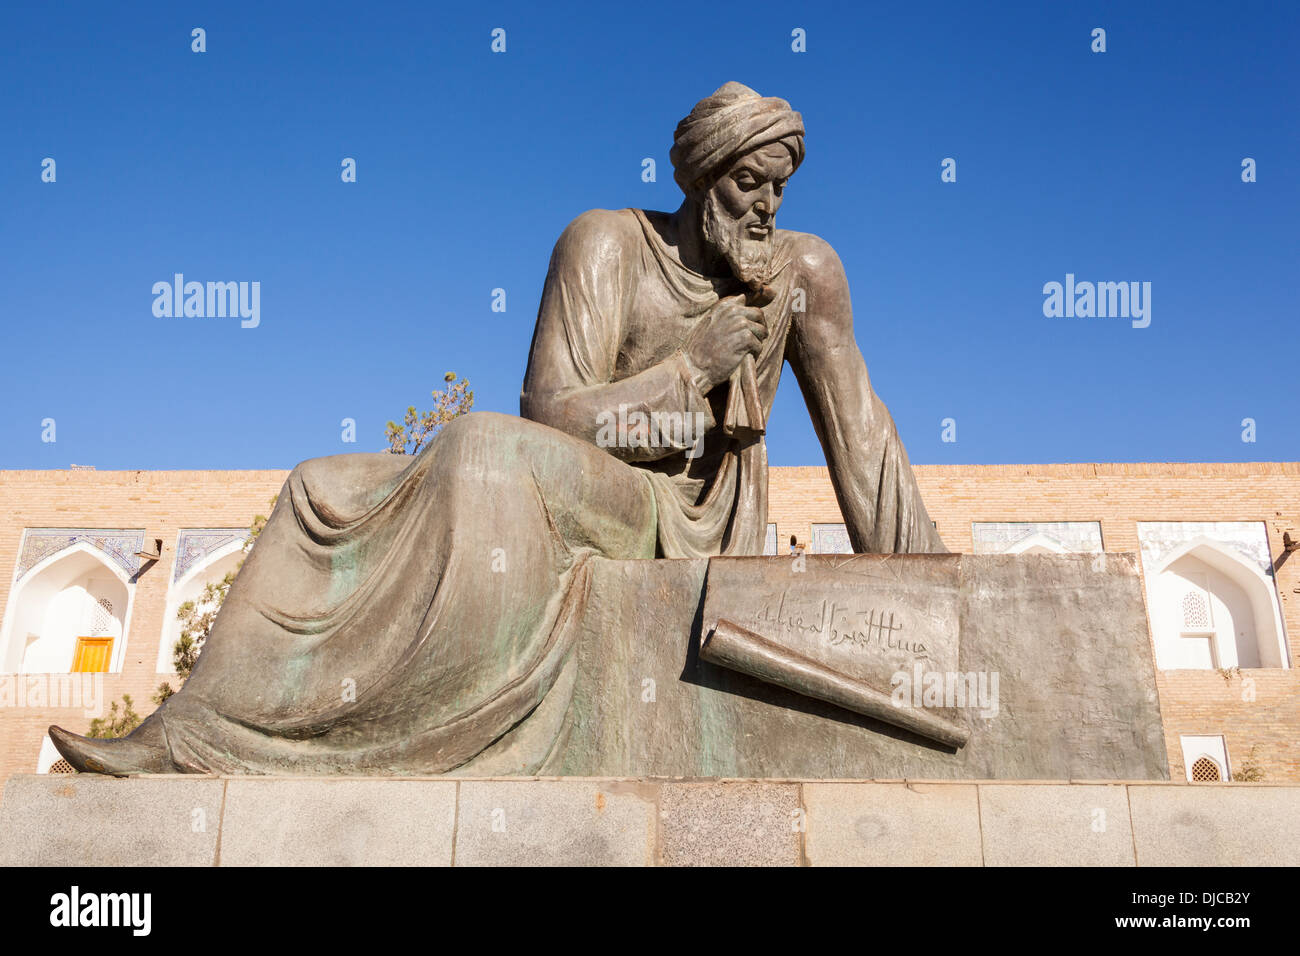 Statue von Al Khwarizmi, neunten Jahrhundert Mathematiker, Ichan Kala, Chiwa, Usbekistan Stockfoto